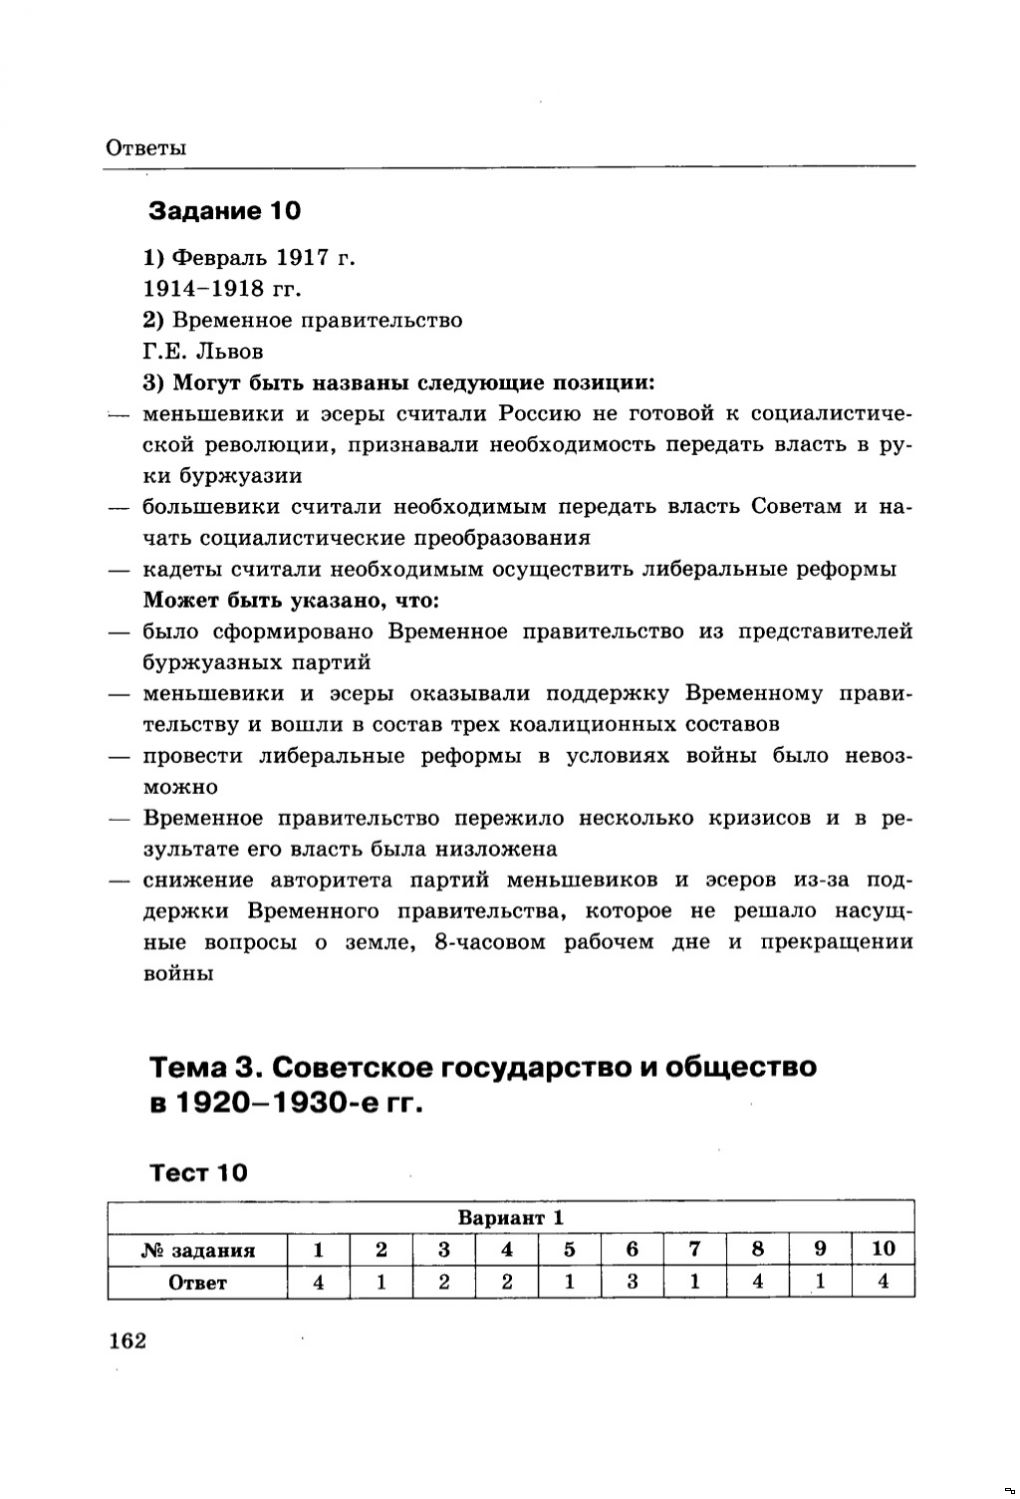 Реферат: Внешняя и внутренняя политика РФ печатных СМИ Германии 1988-1999 гг.